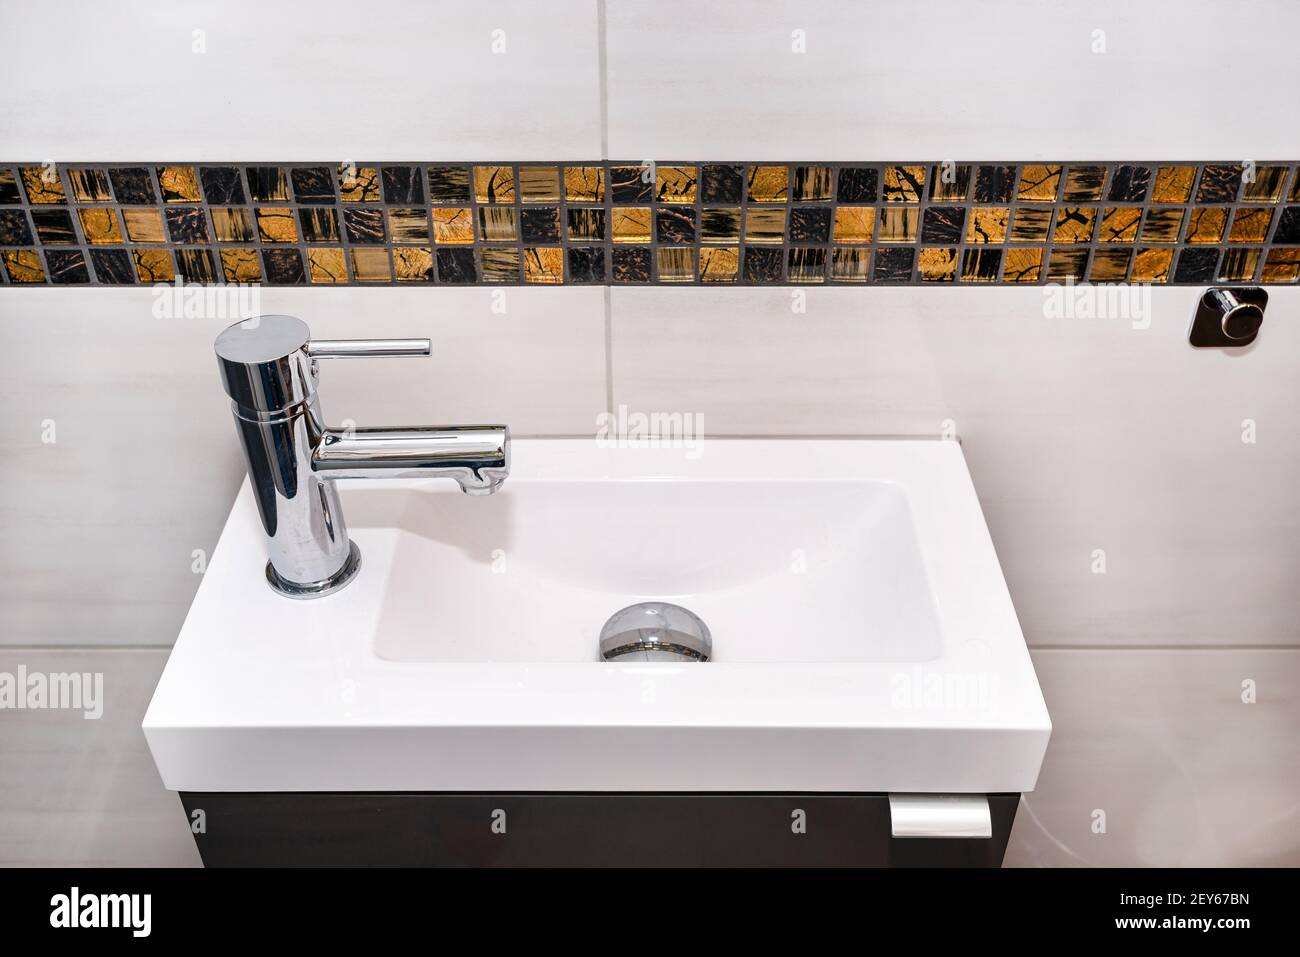 Ein kleines rechteckiges Waschbecken mit einem silbernen Wasserhahn auf der  linken Seite in einem gefliesten Badezimmer Stockfotografie - Alamy